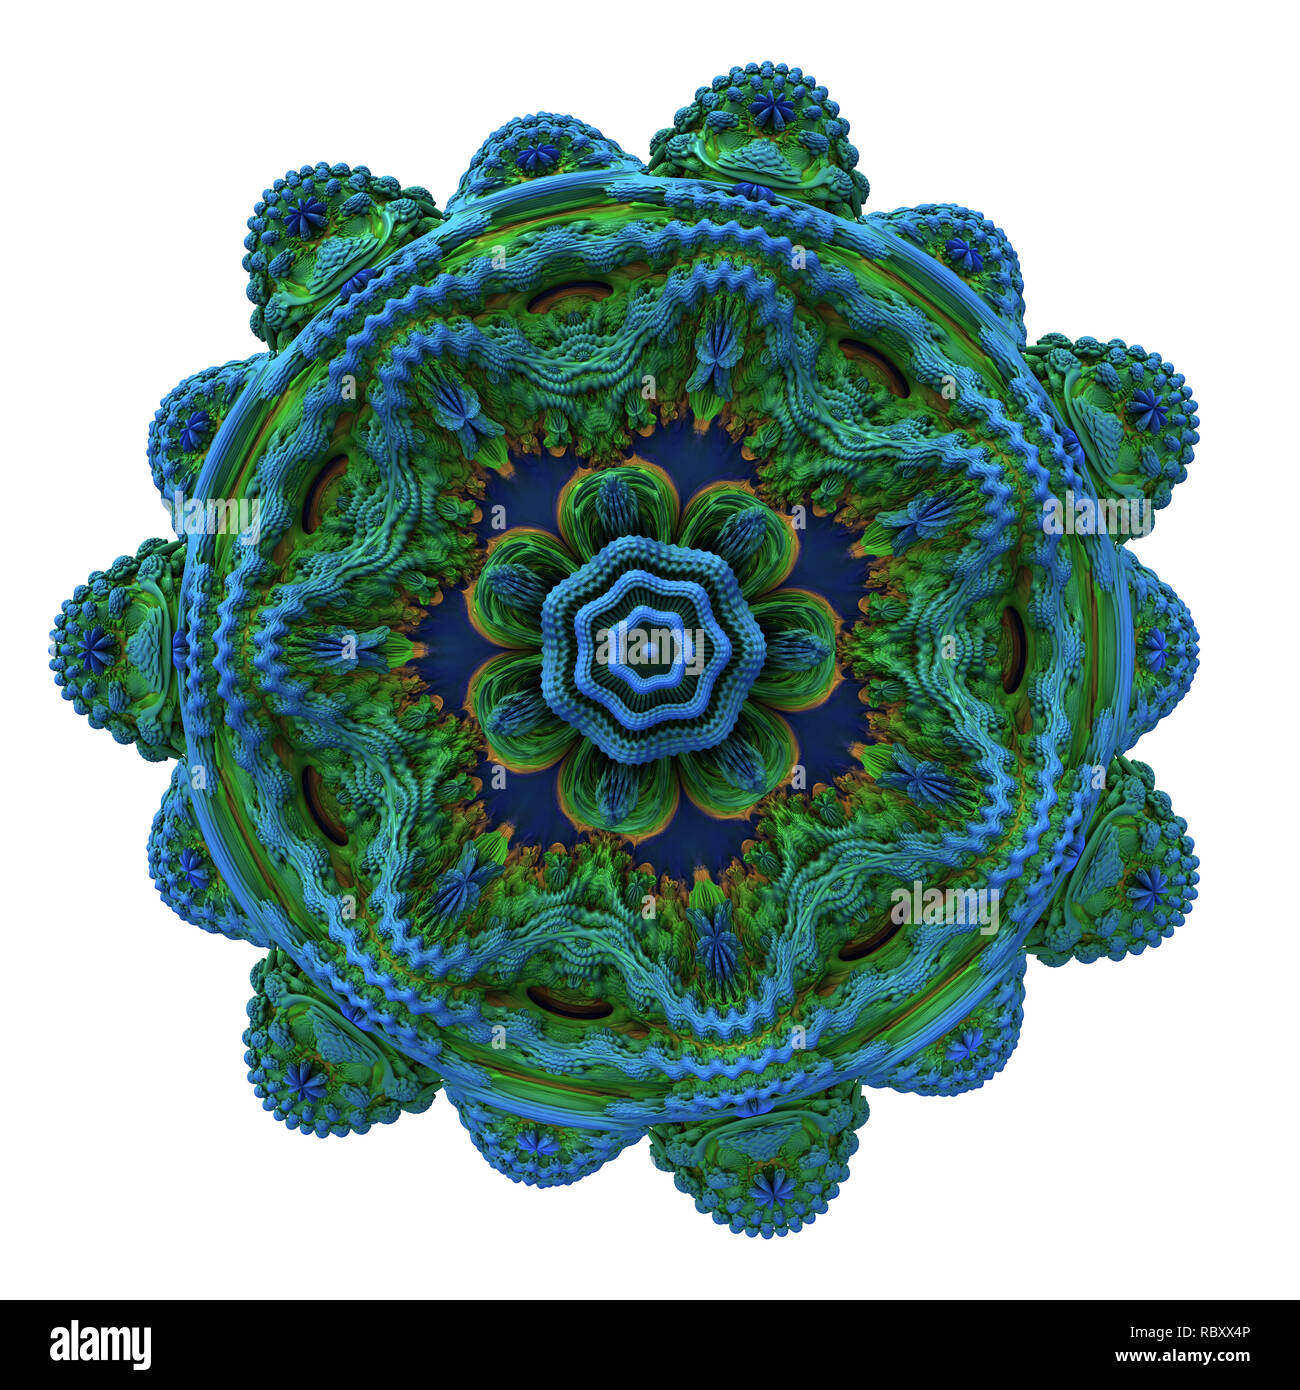 Abstrakt fractal digital art design 11138 Stockfoto